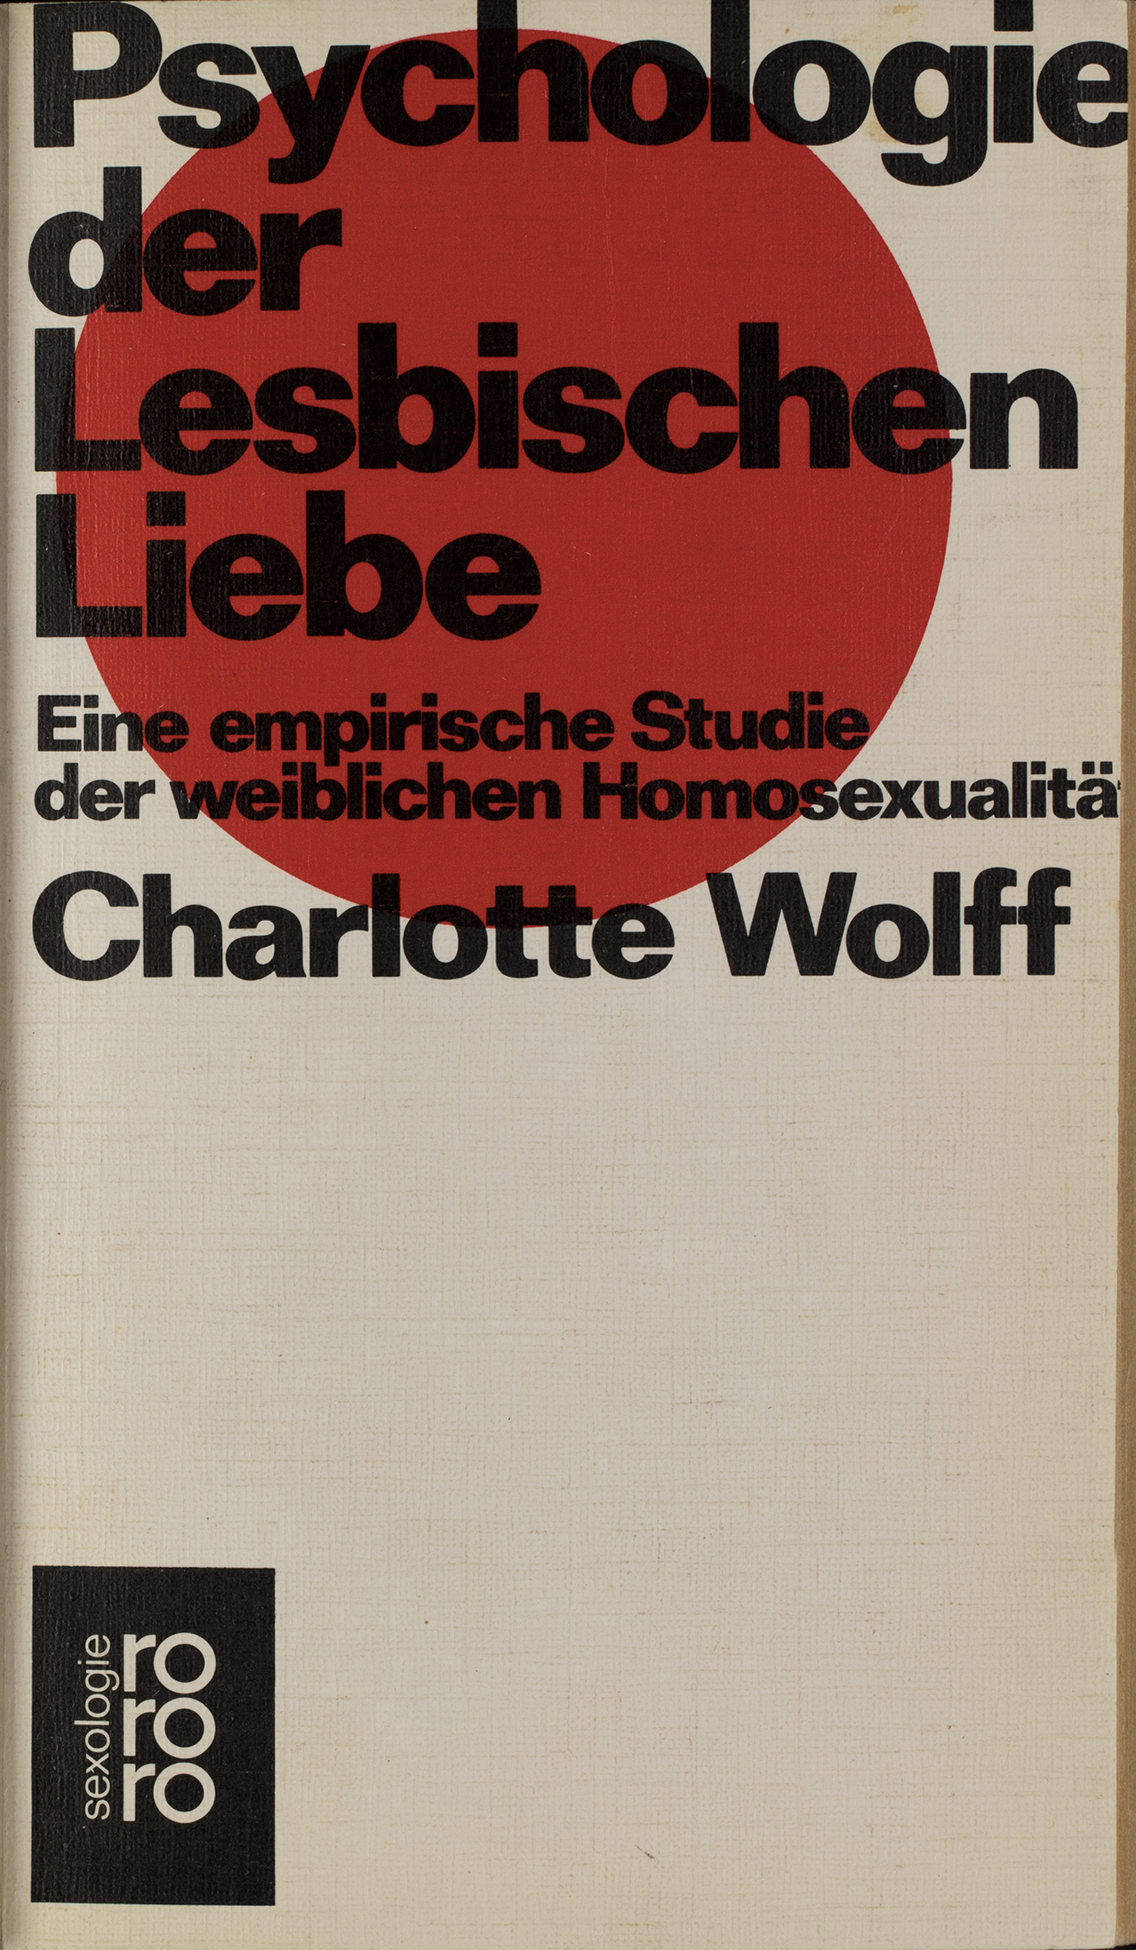 Charlotte Wolff: Psychologie der lesbischen Liebe. Eine empirische Studie der weiblichen Homosexualität. Reinbek: Rowohlt Taschenbuch, 1973. übersetzt von Christel Buschmann. Signatur: 29 SA 1804-8040